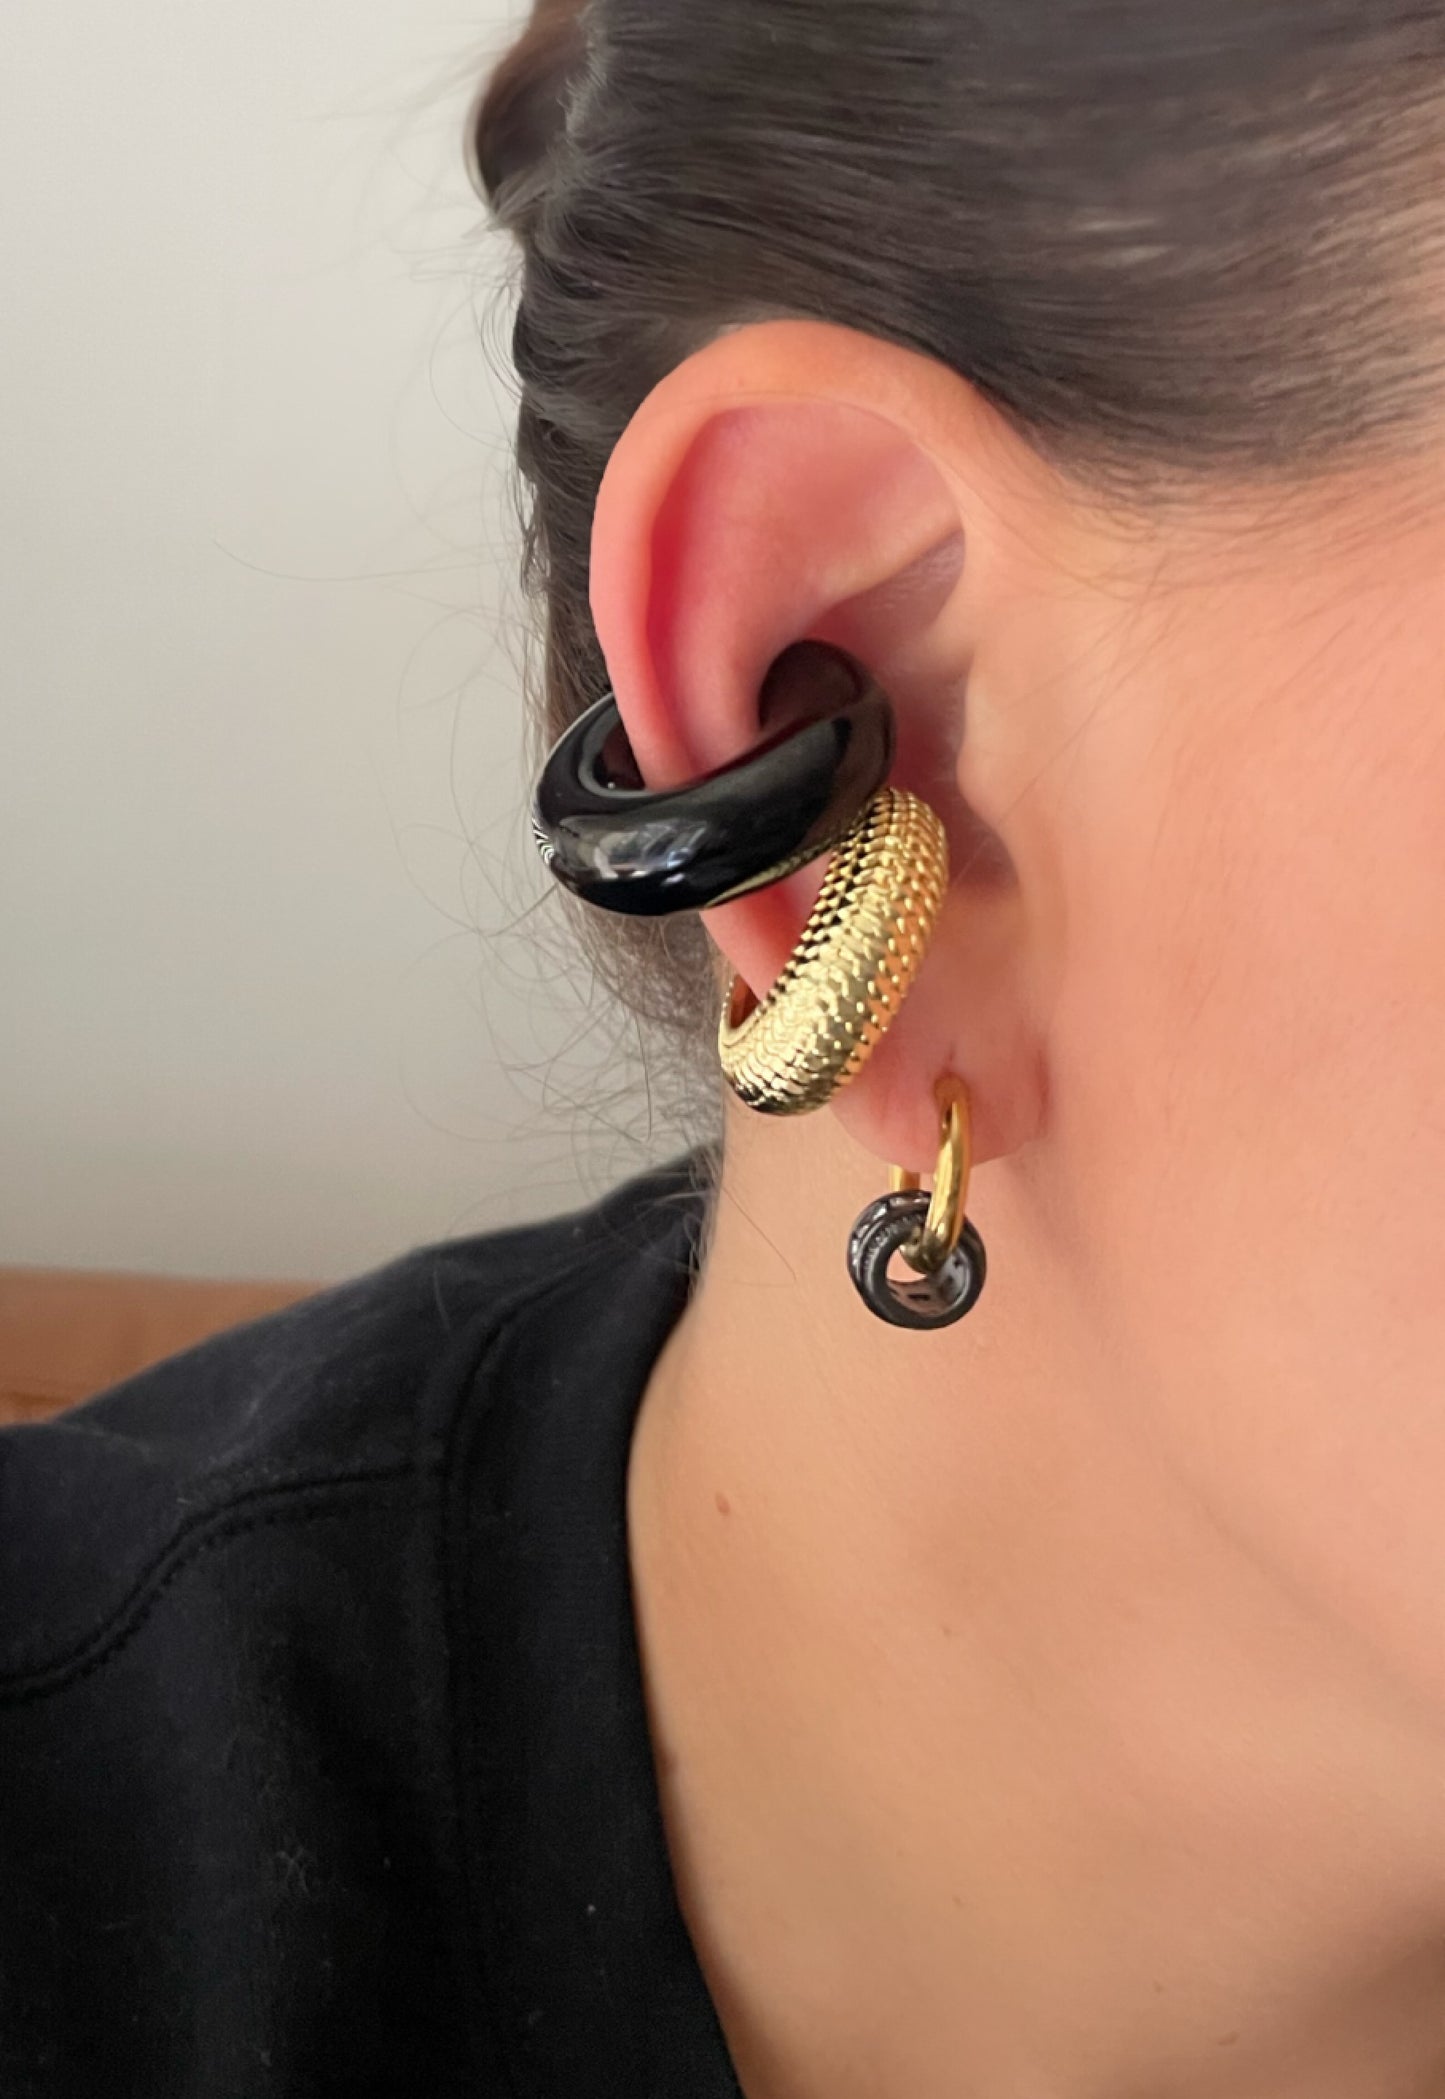 XL earcuff earrings